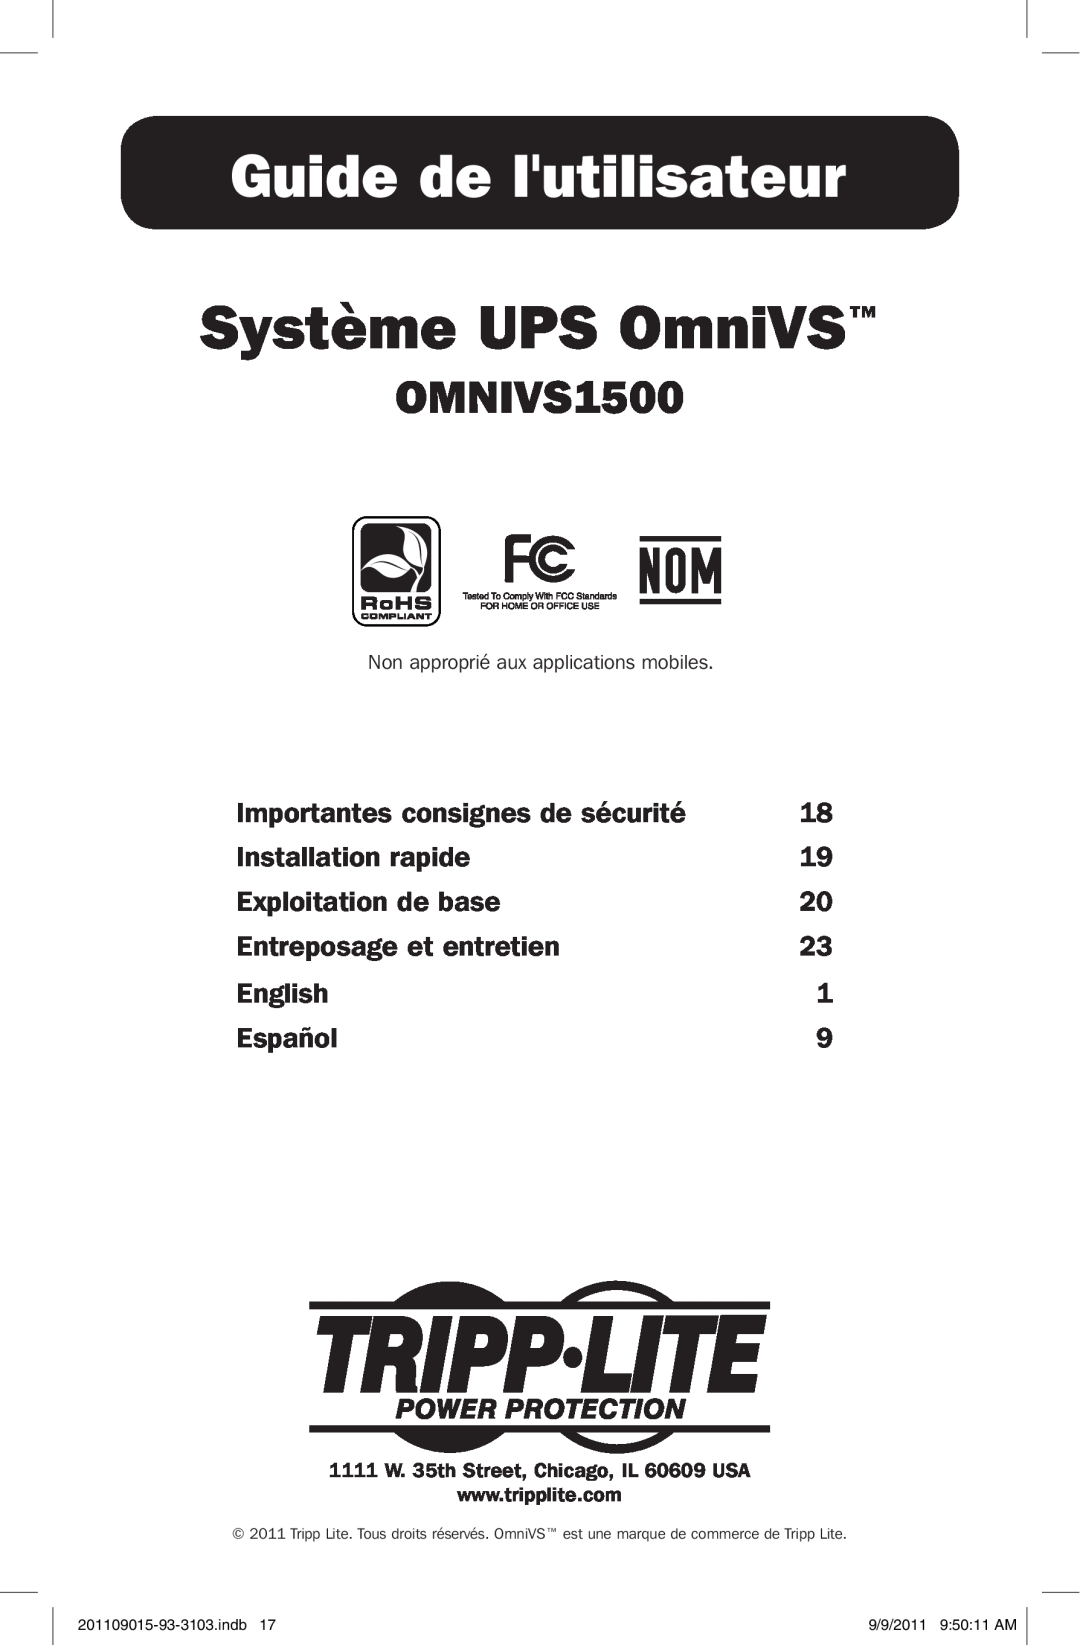 Tripp Lite OMNIVS1500 Guide de lutilisateur, Système UPS OmniVS, Importantes consignes de sécurité, Installation rapide 